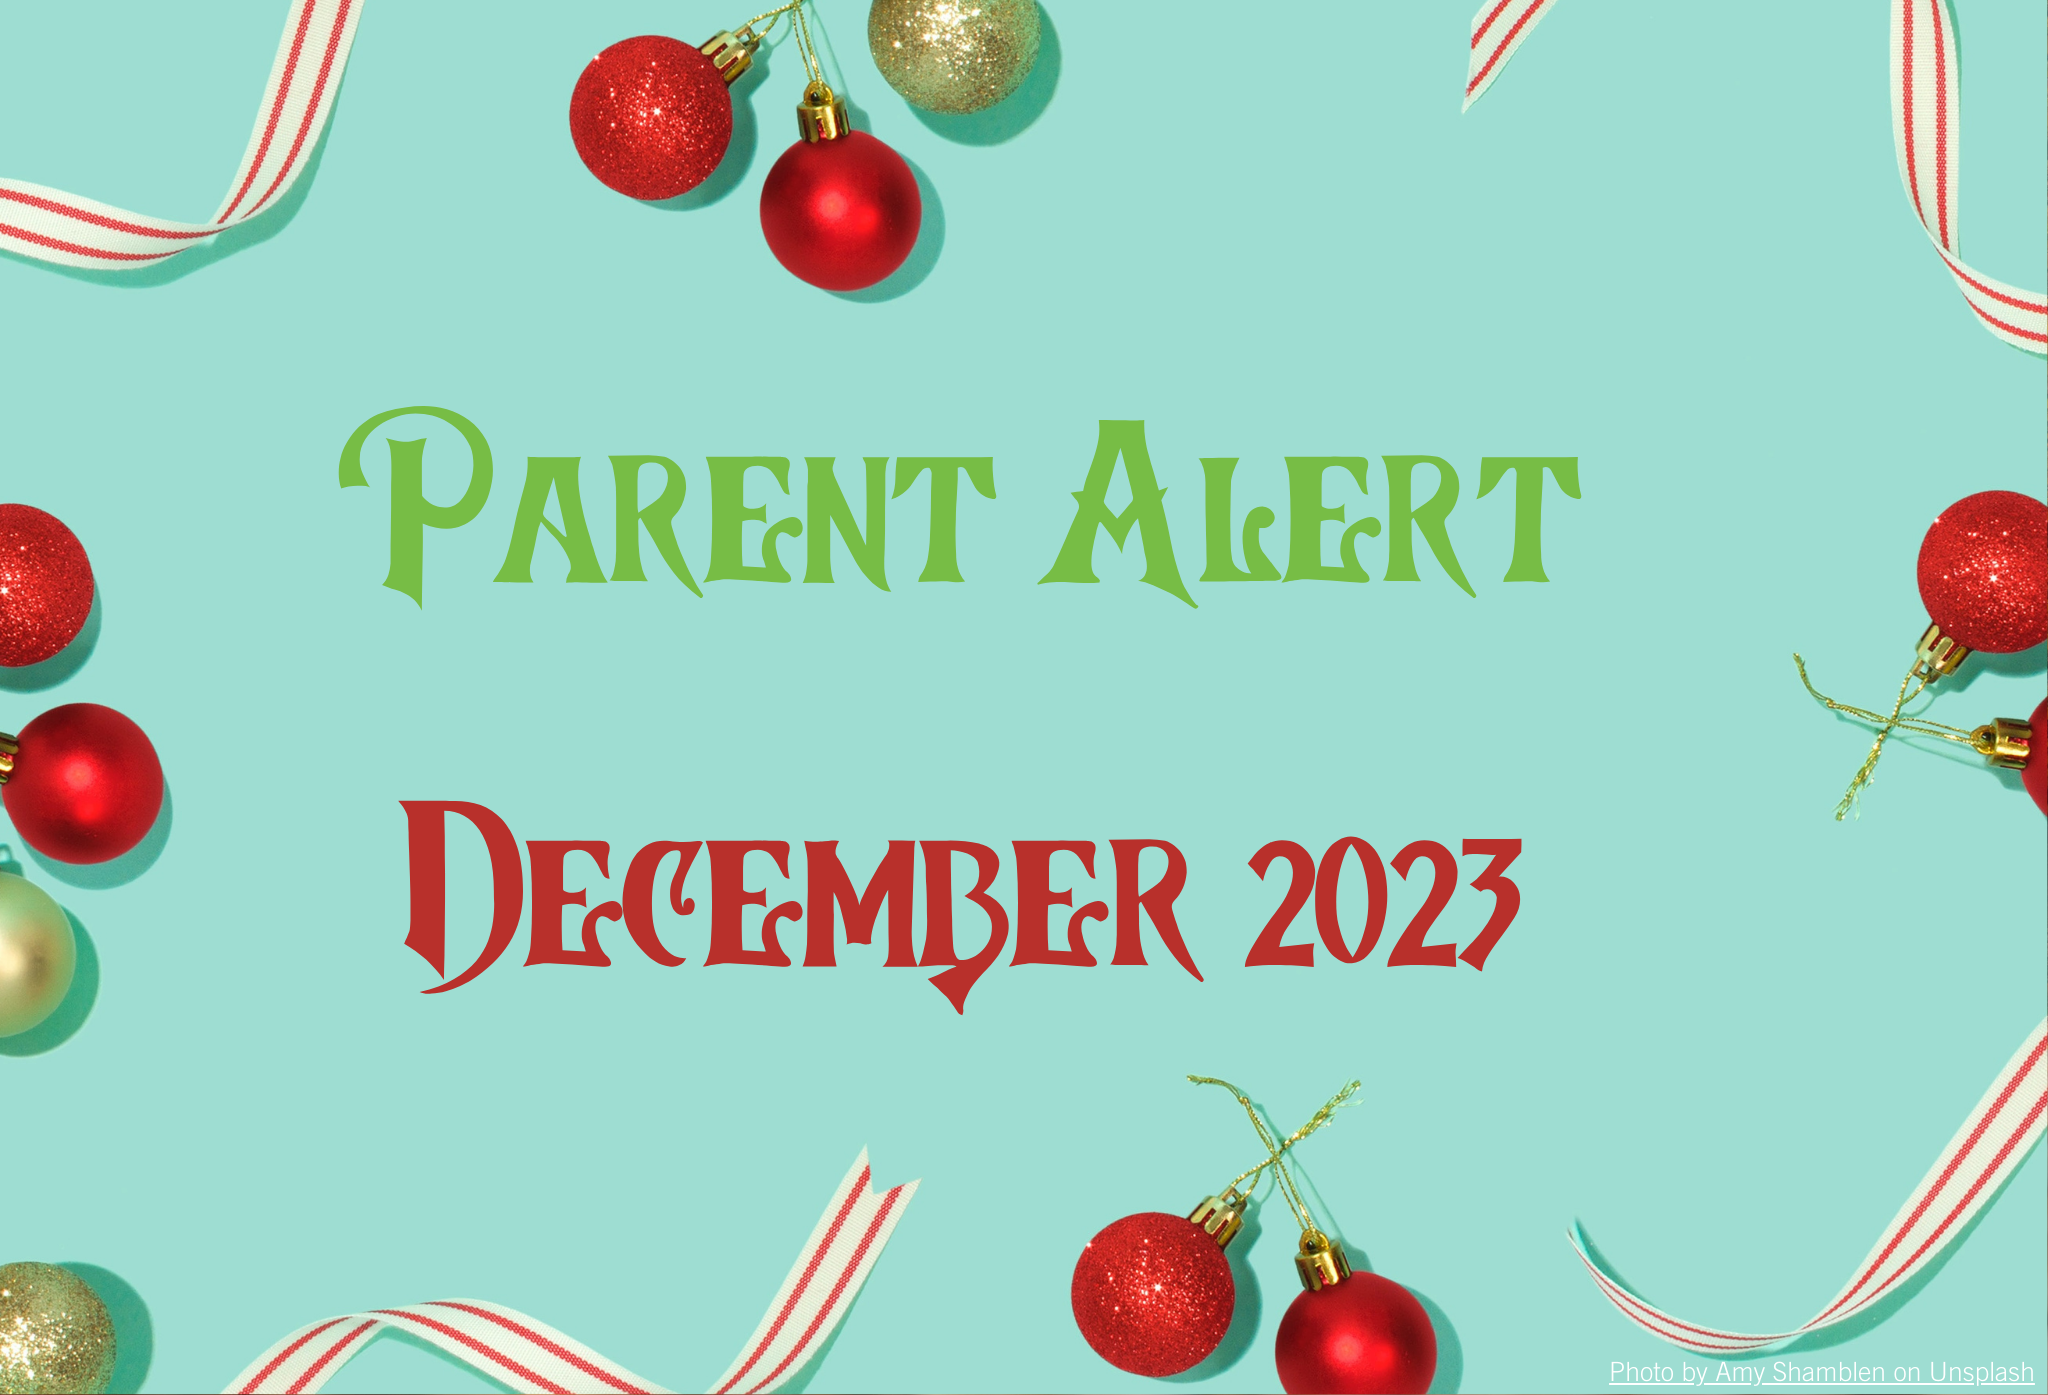 Parent Alert December 2023 Background Image